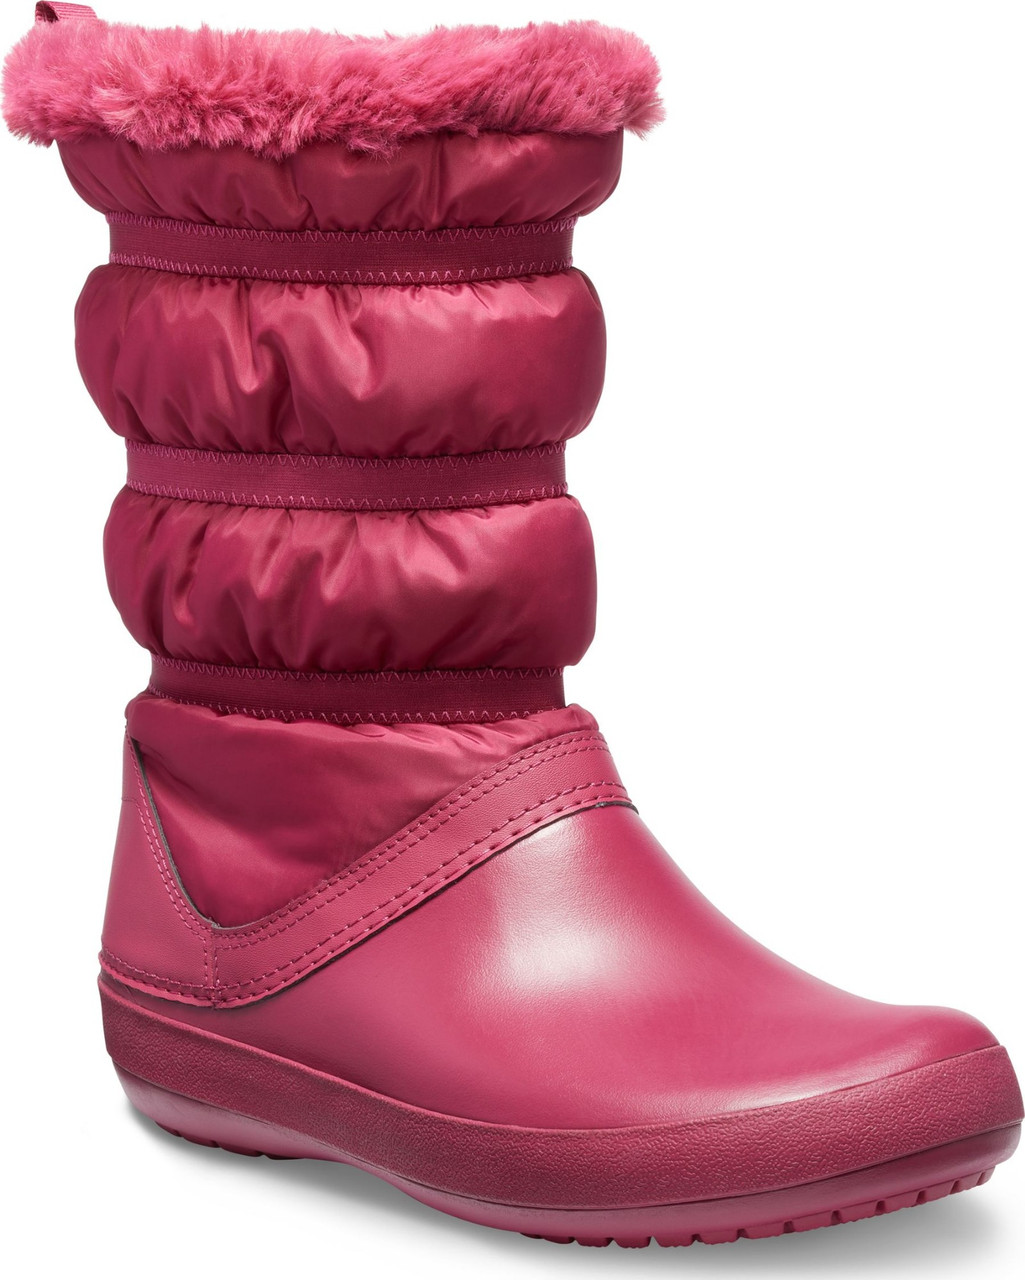 Чоботи зимові жіночі непромокальні дутики з хутром / Crocs Women Crocband Winter Boot (205314), Гранатові 38